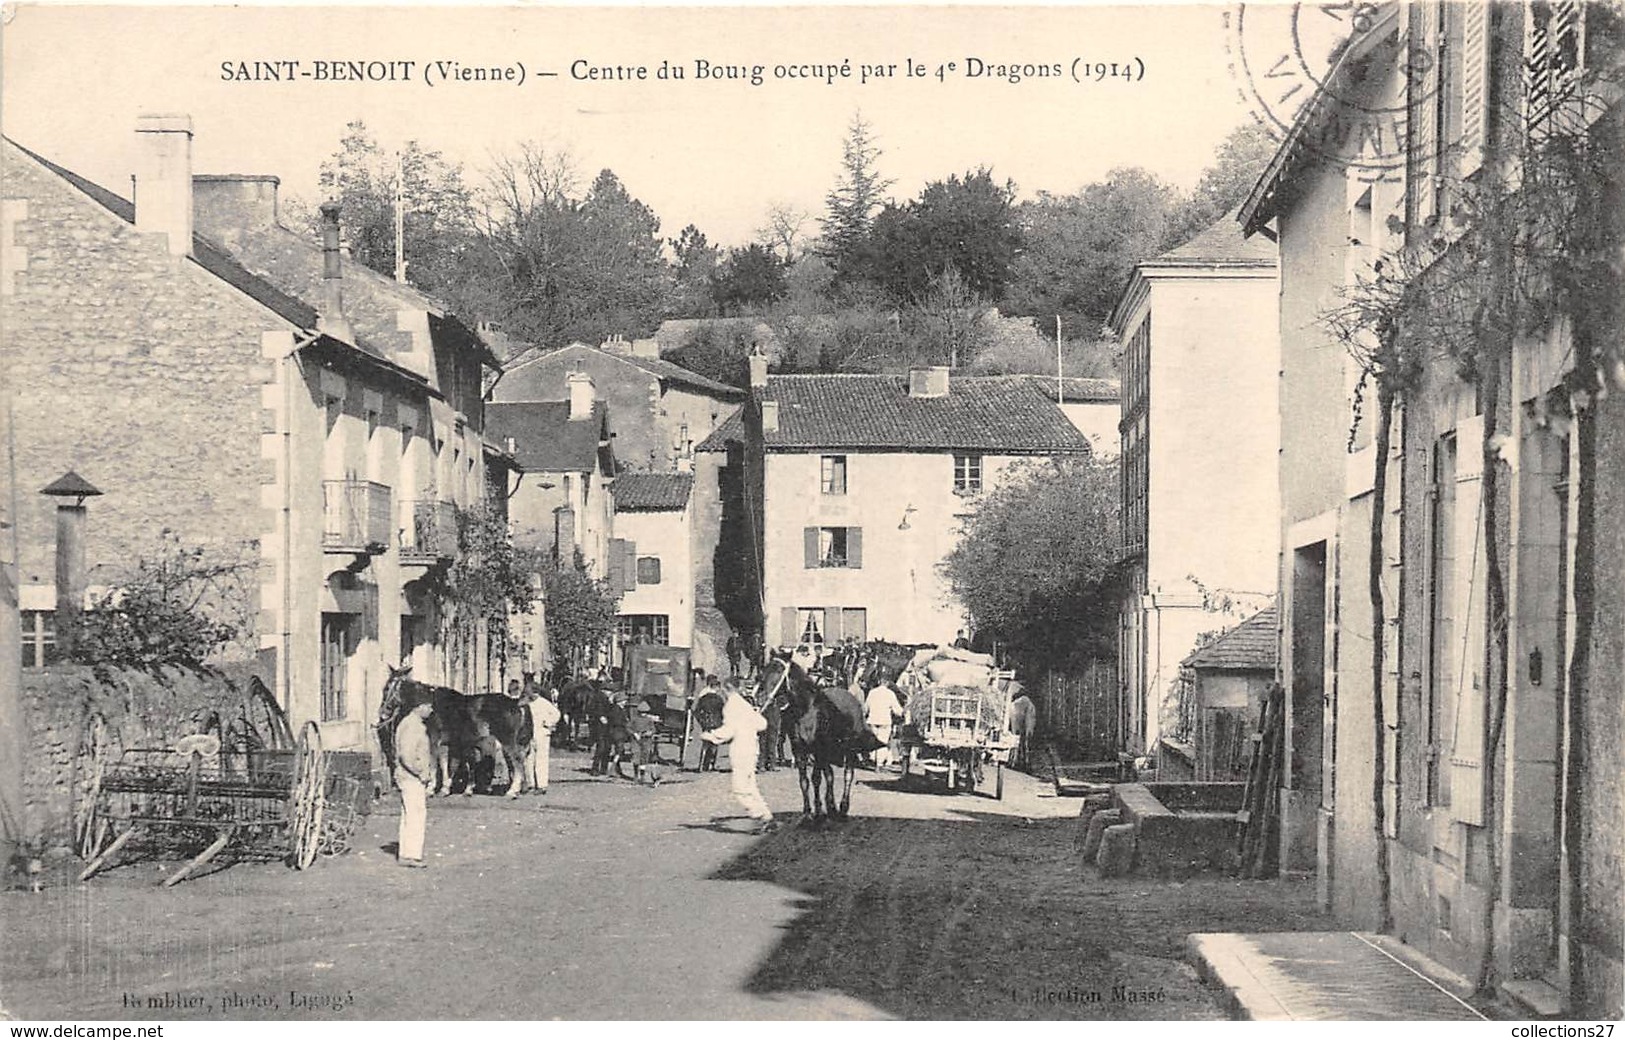 86-SAINT-BENOIT- CENTRE DU BOURG OCCUPE PAR LE 4e DRAGON 1914 - Saint Benoit